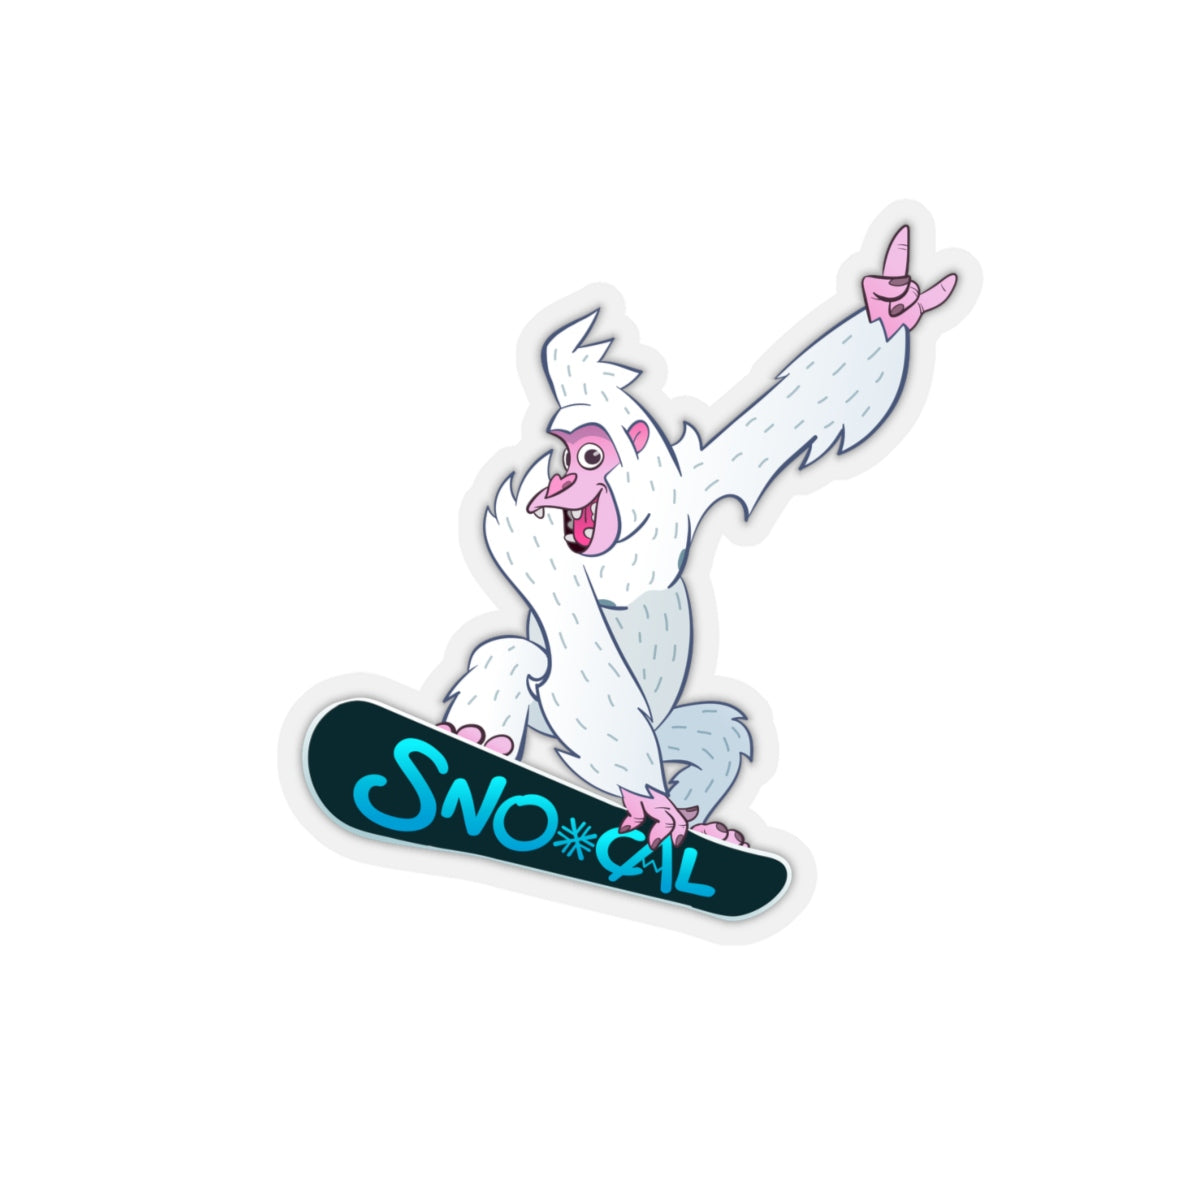 Snorilla Air Grab snowboard sticker - Sno Cal